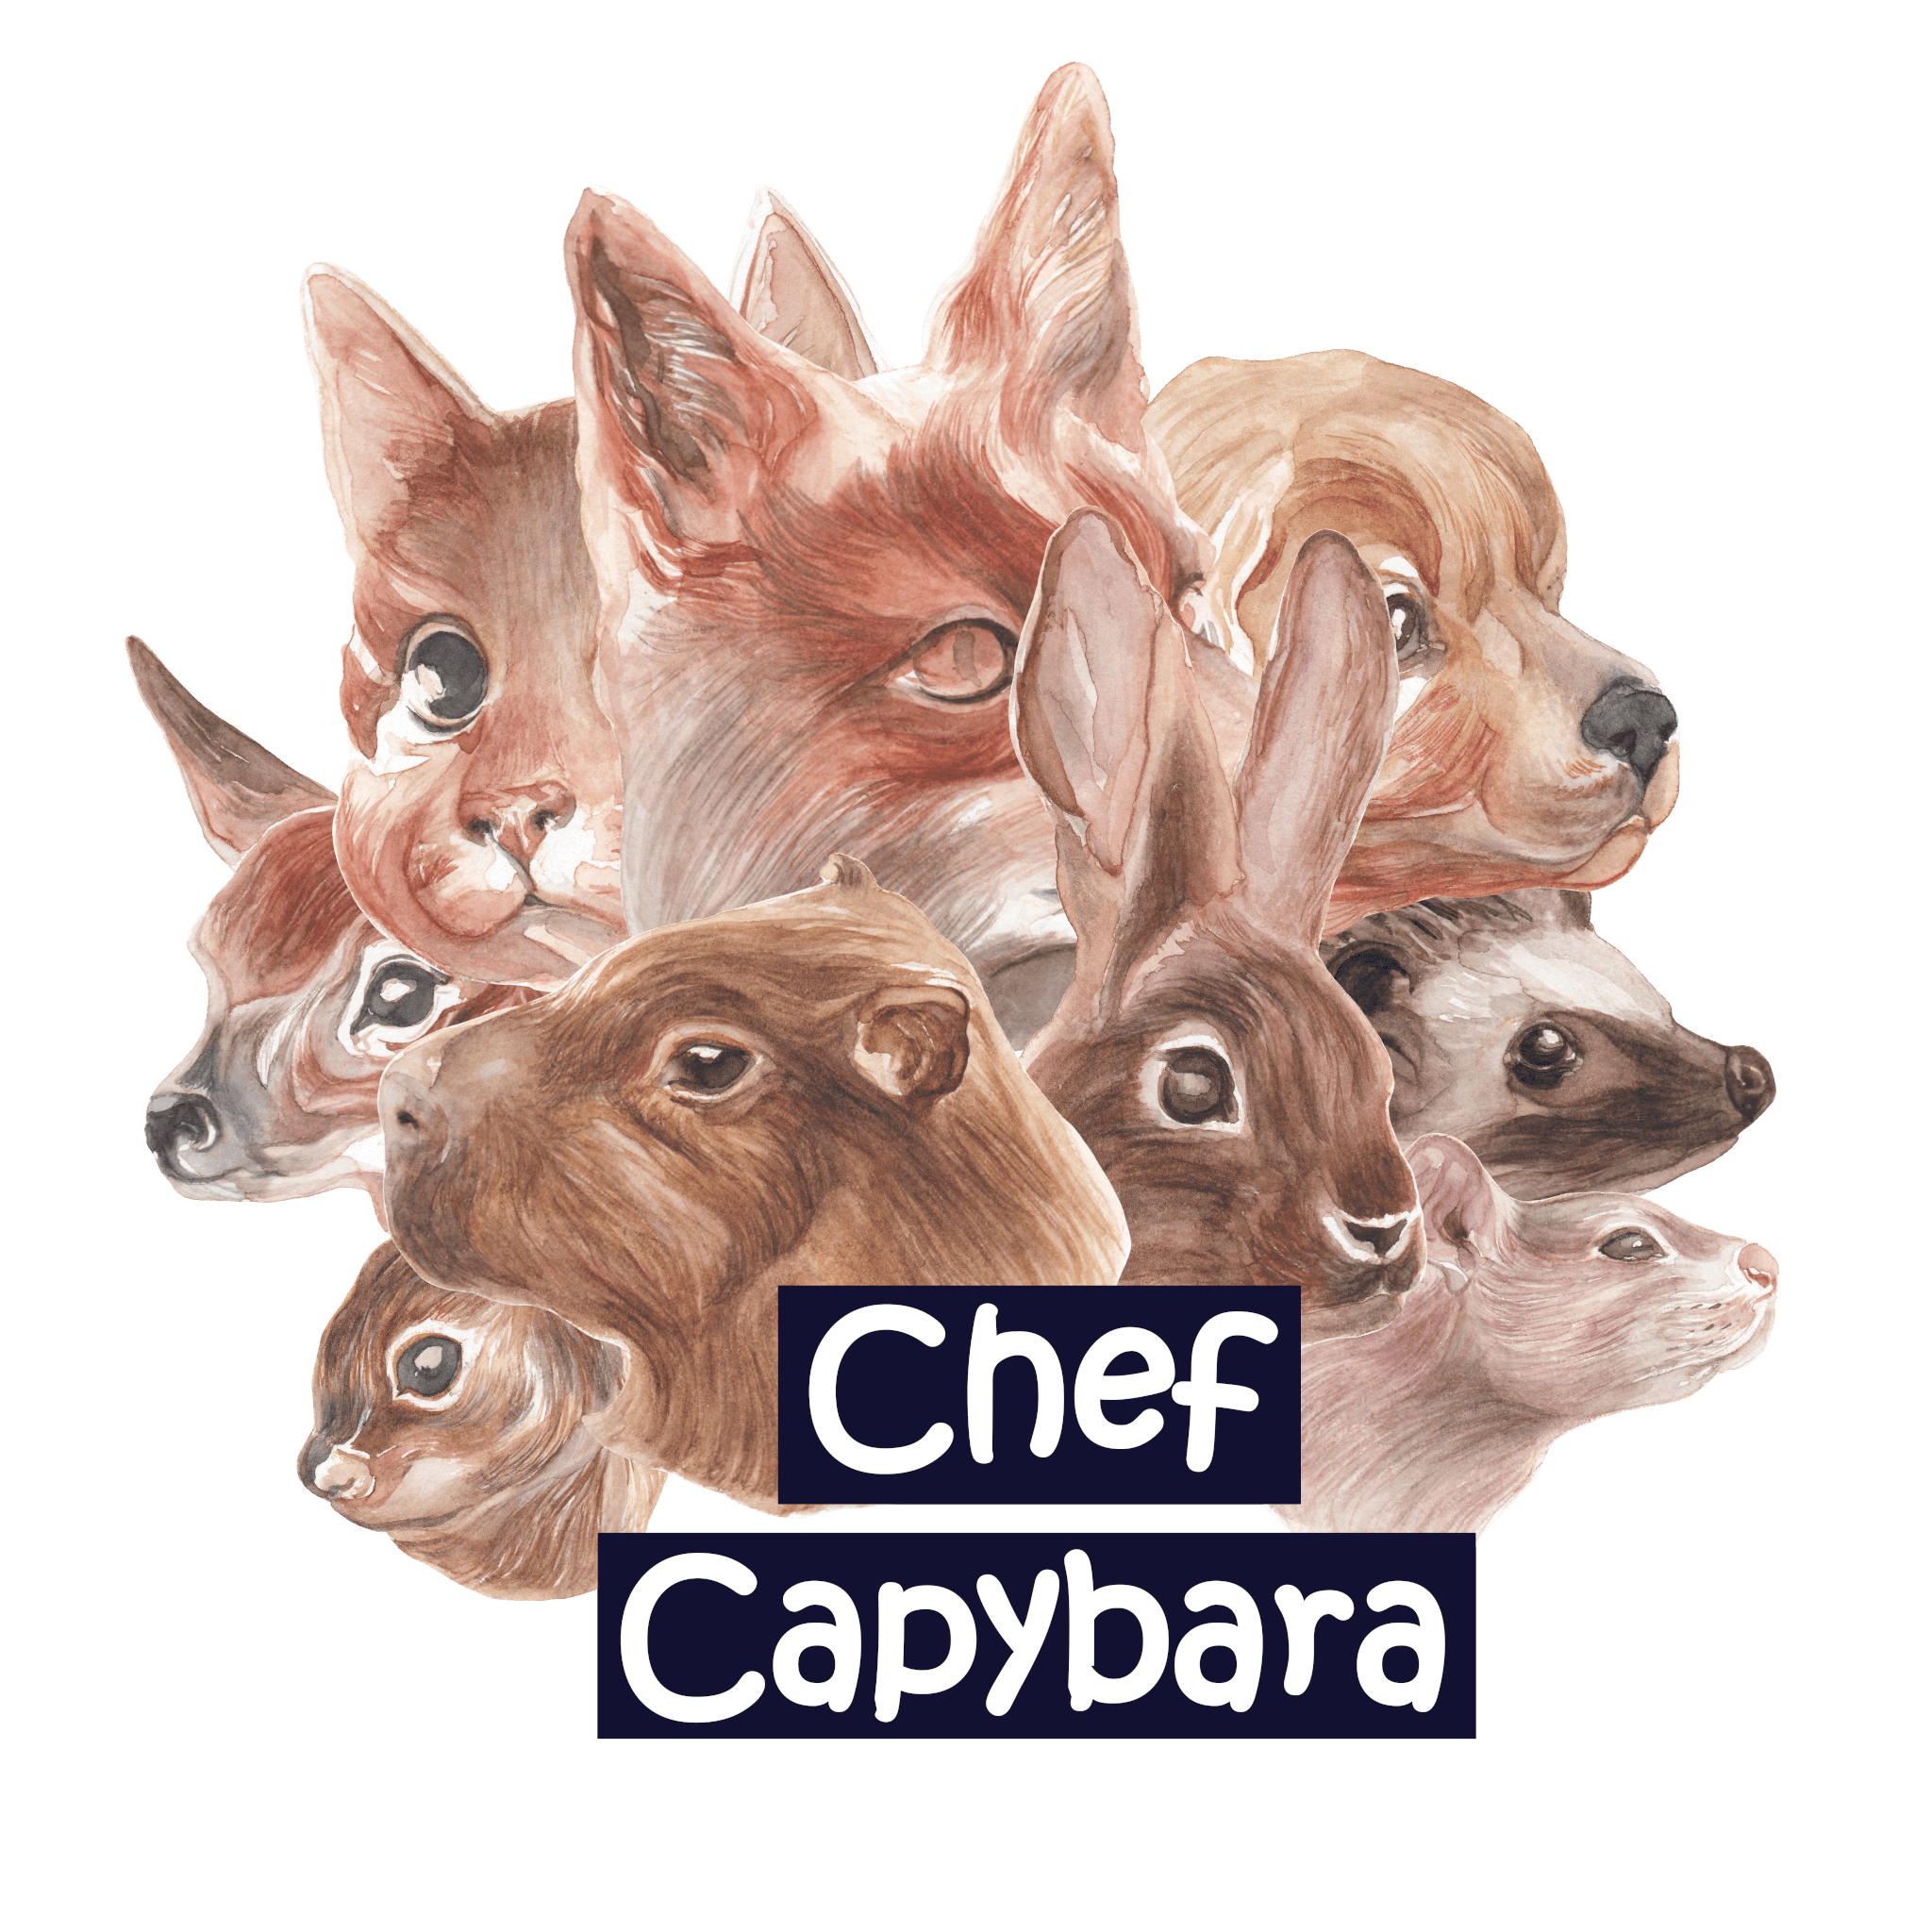 Chef Capybara